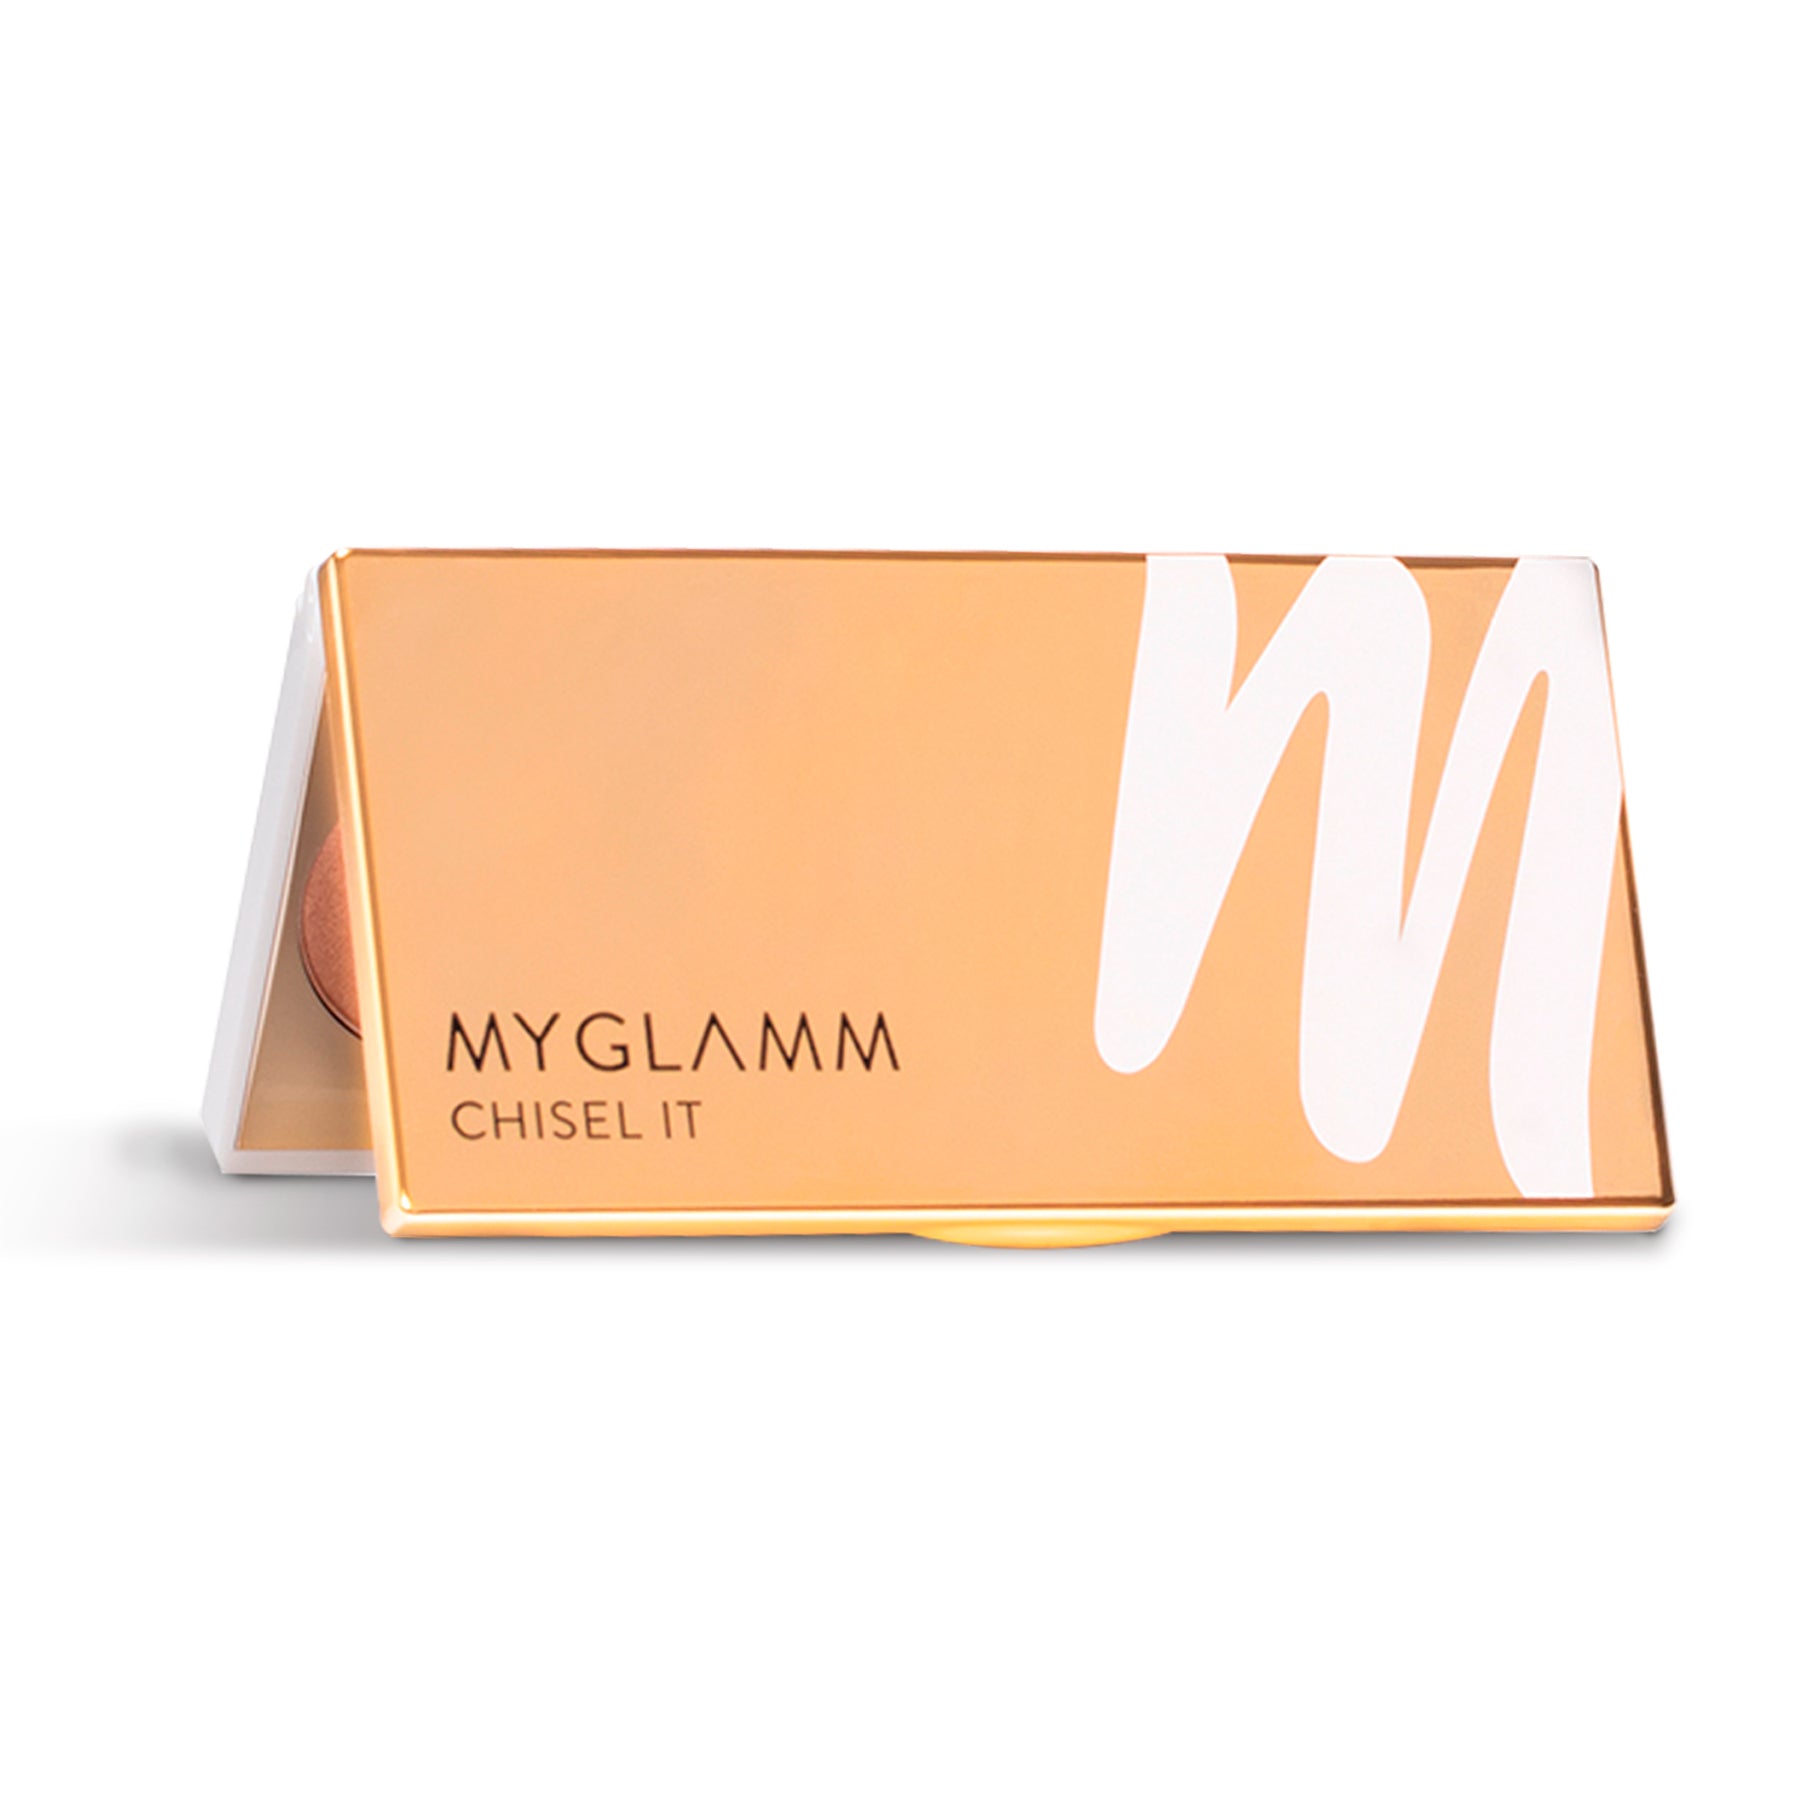 MyGlamm Chisel It Contour Kit-Face Value-12gm